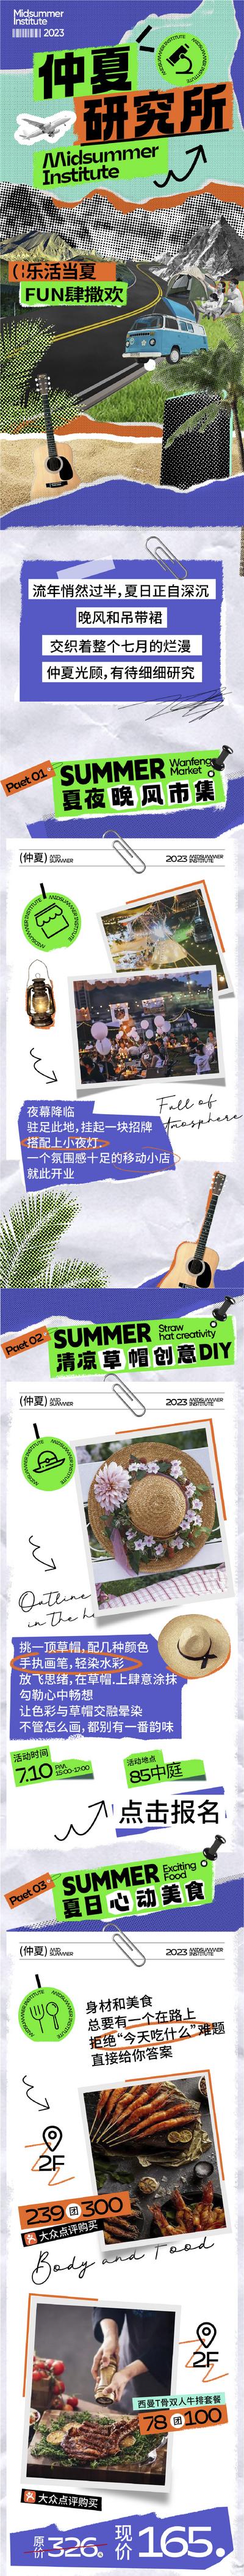 南门网 海报 长图 商场 夏季 仲夏 活动 拼贴风